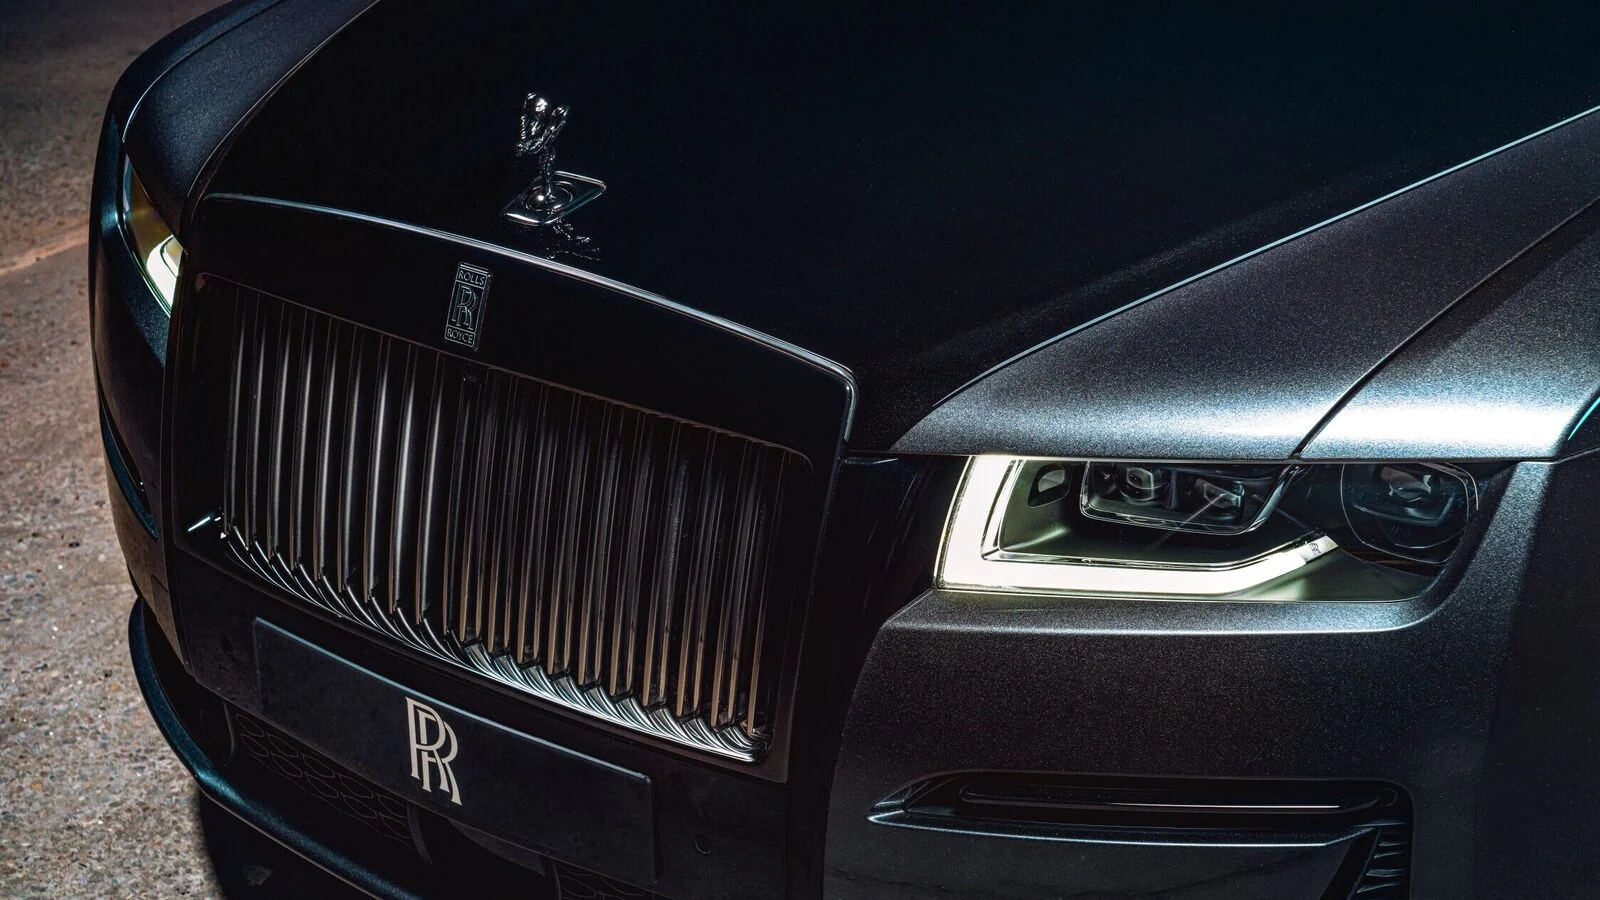 Rolls Royce CEO: